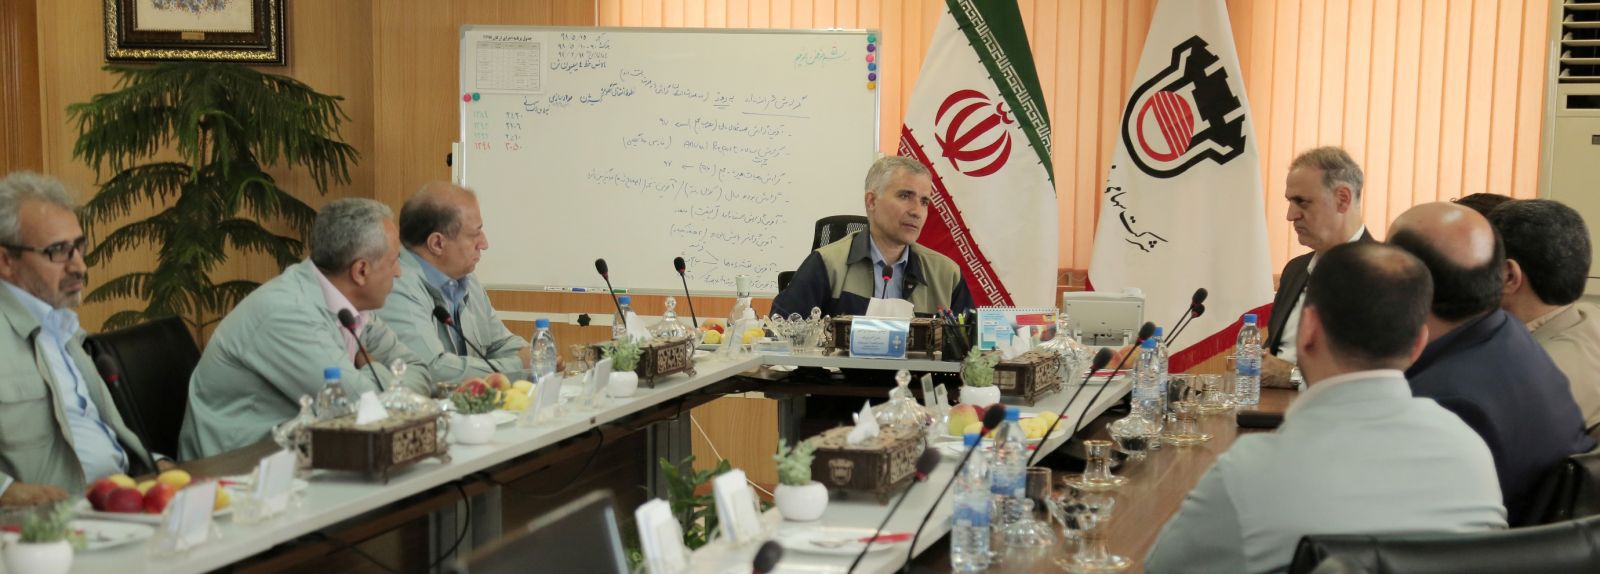 امور مالیاتی اصفهان با بسته های متنوع حمایتی به تولید ذوب آهن کمک می کند